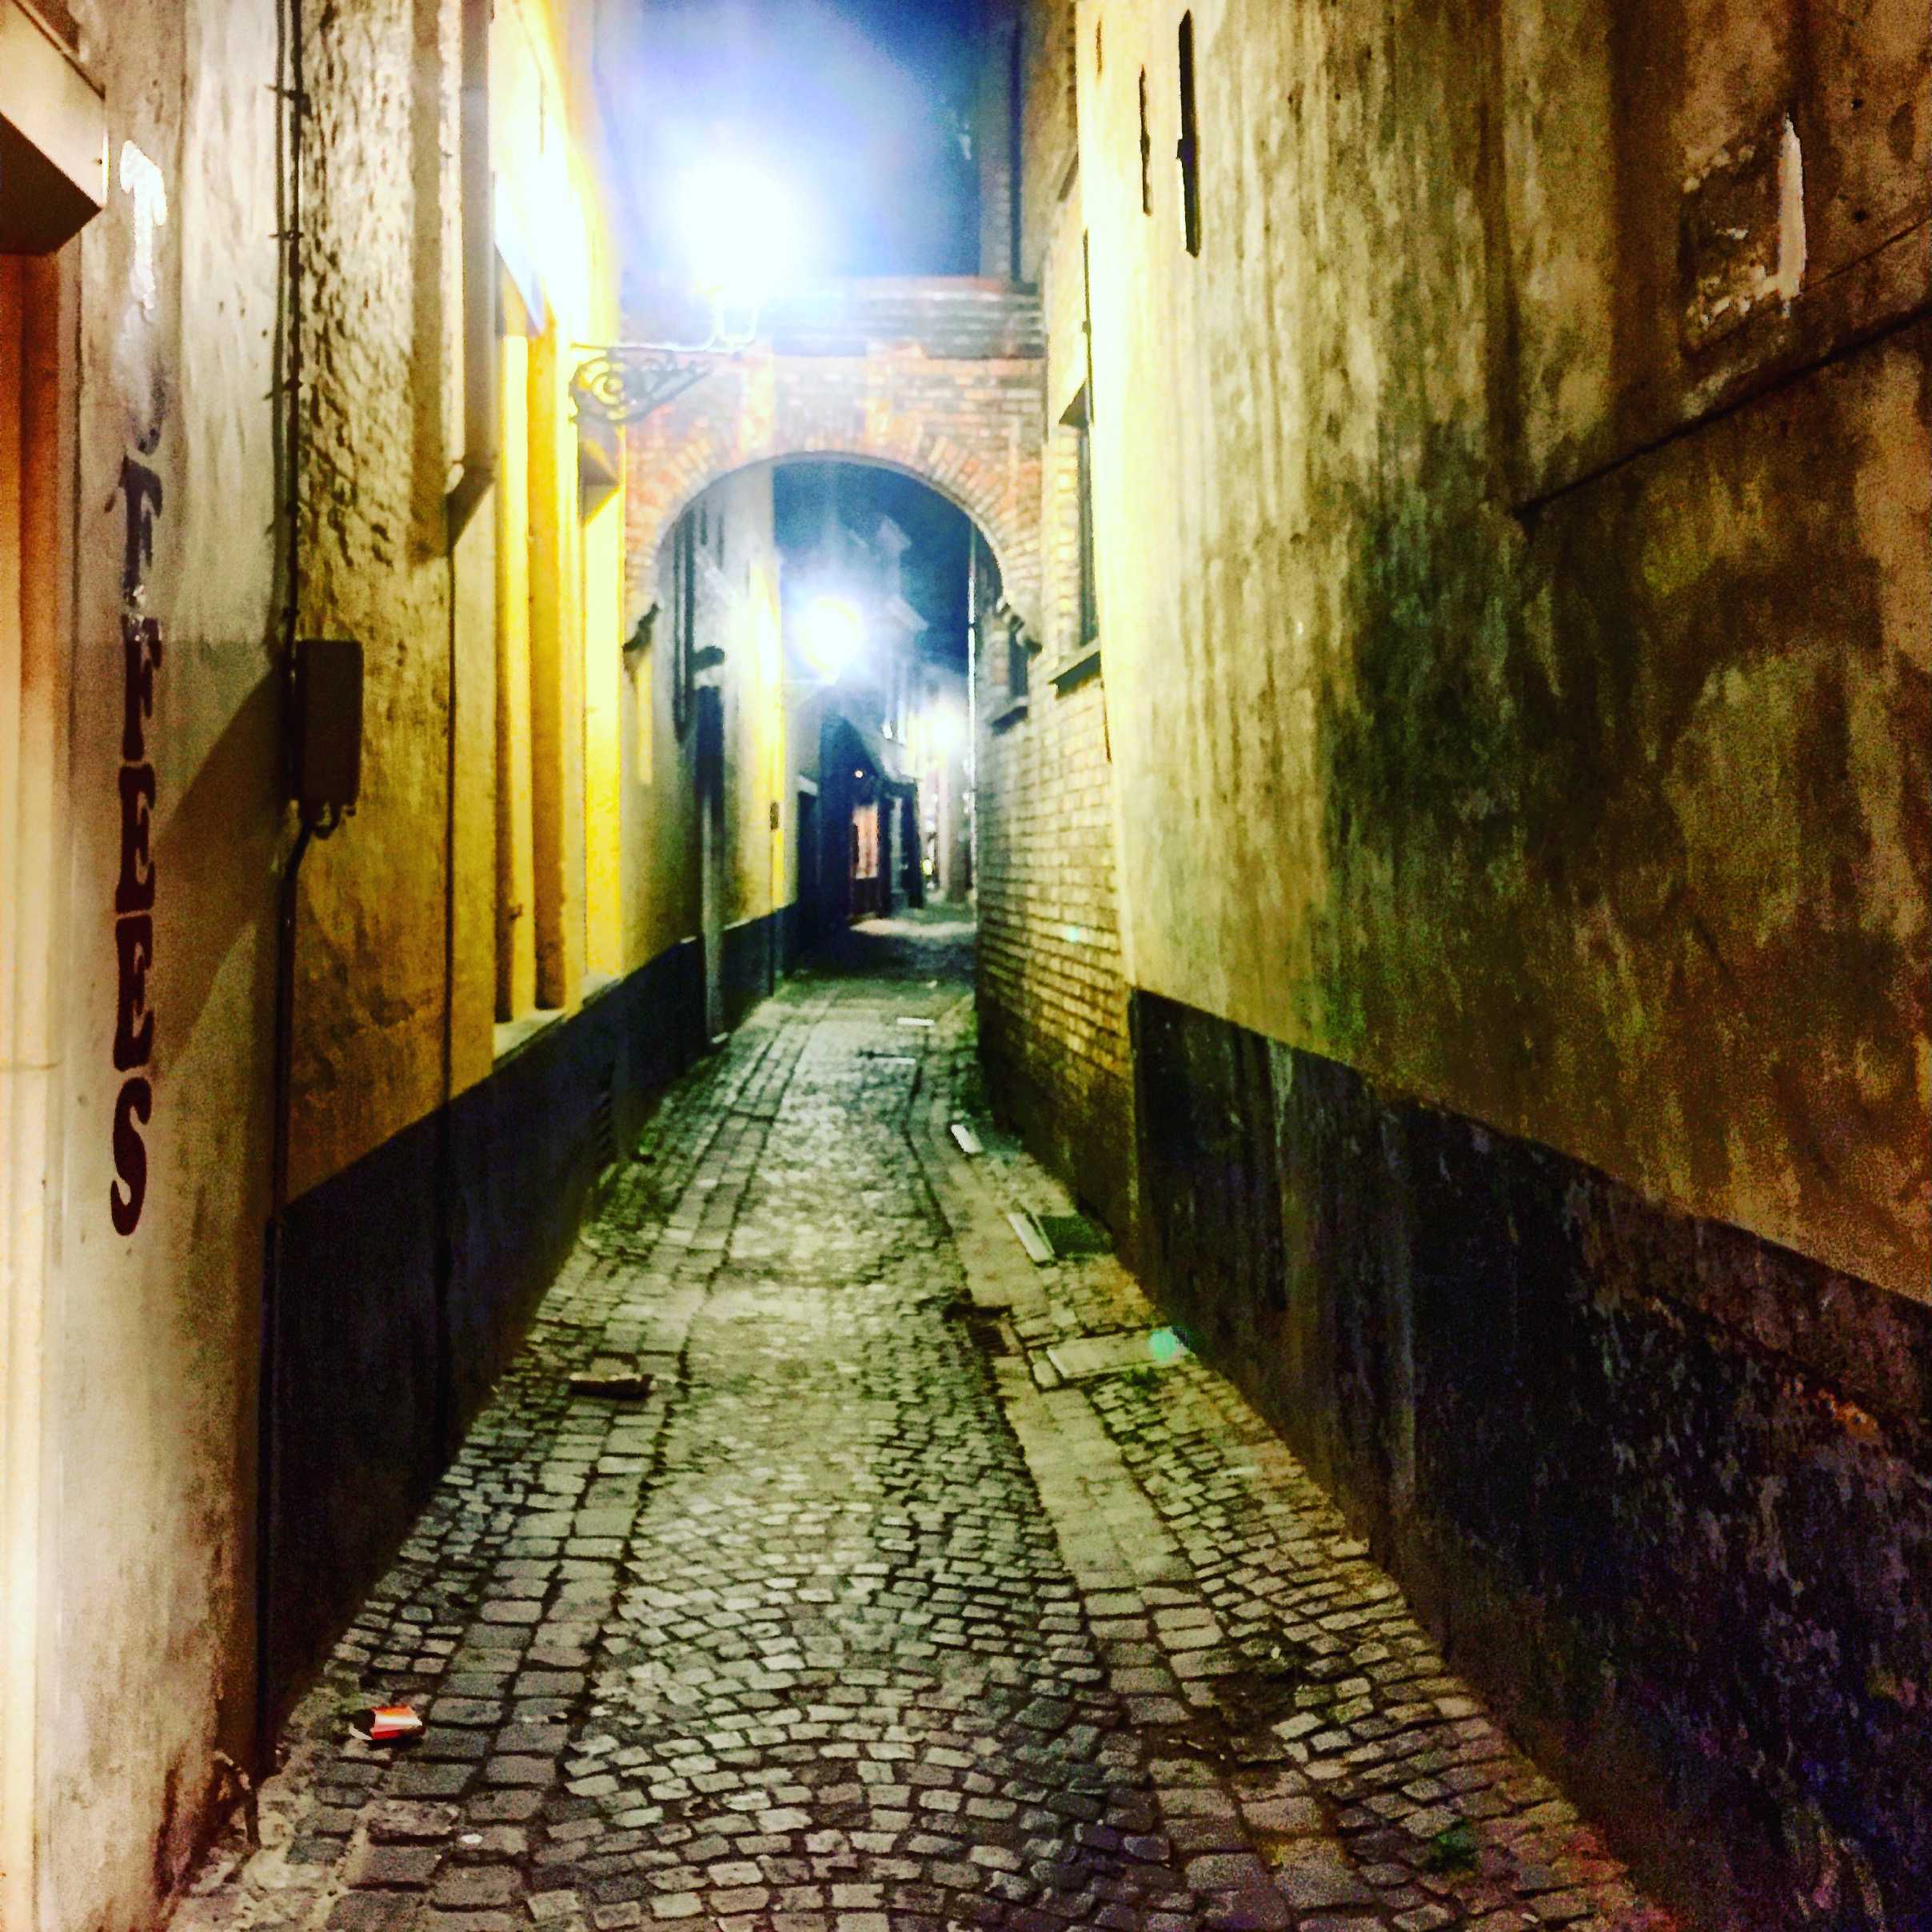 A cobblestone alley at night.